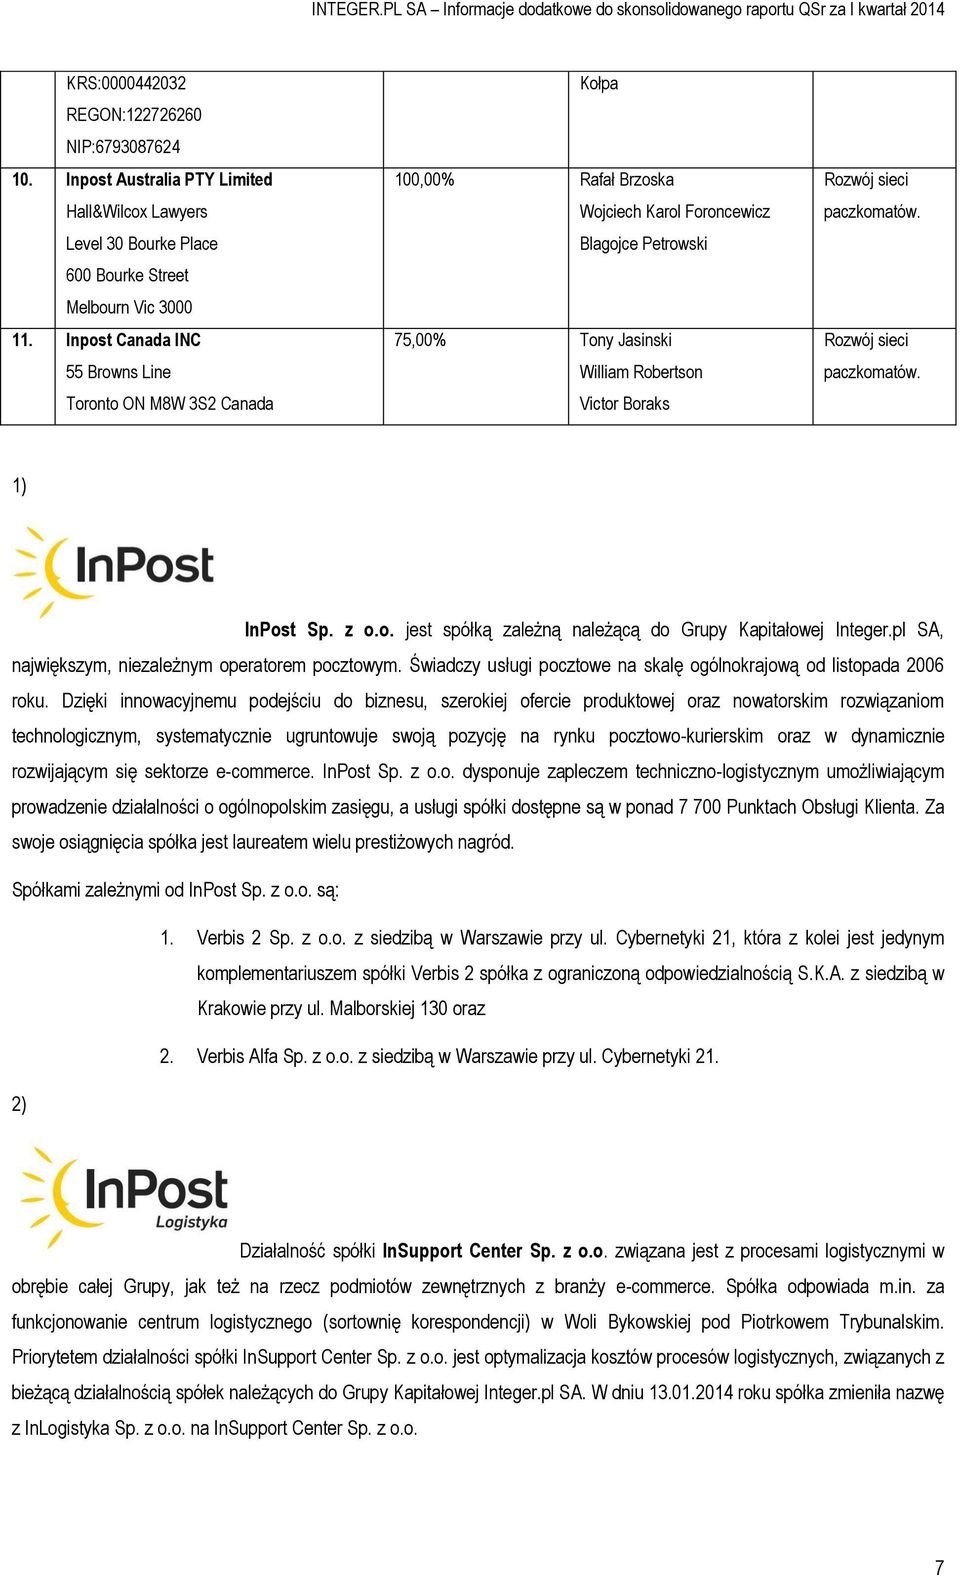 paczkomatów. Rozwój sieci paczkomatów. 1) InPost Sp. z o.o. jest spółką zależną należącą do Grupy Kapitałowej Integer.pl SA, największym, niezależnym operatorem pocztowym.